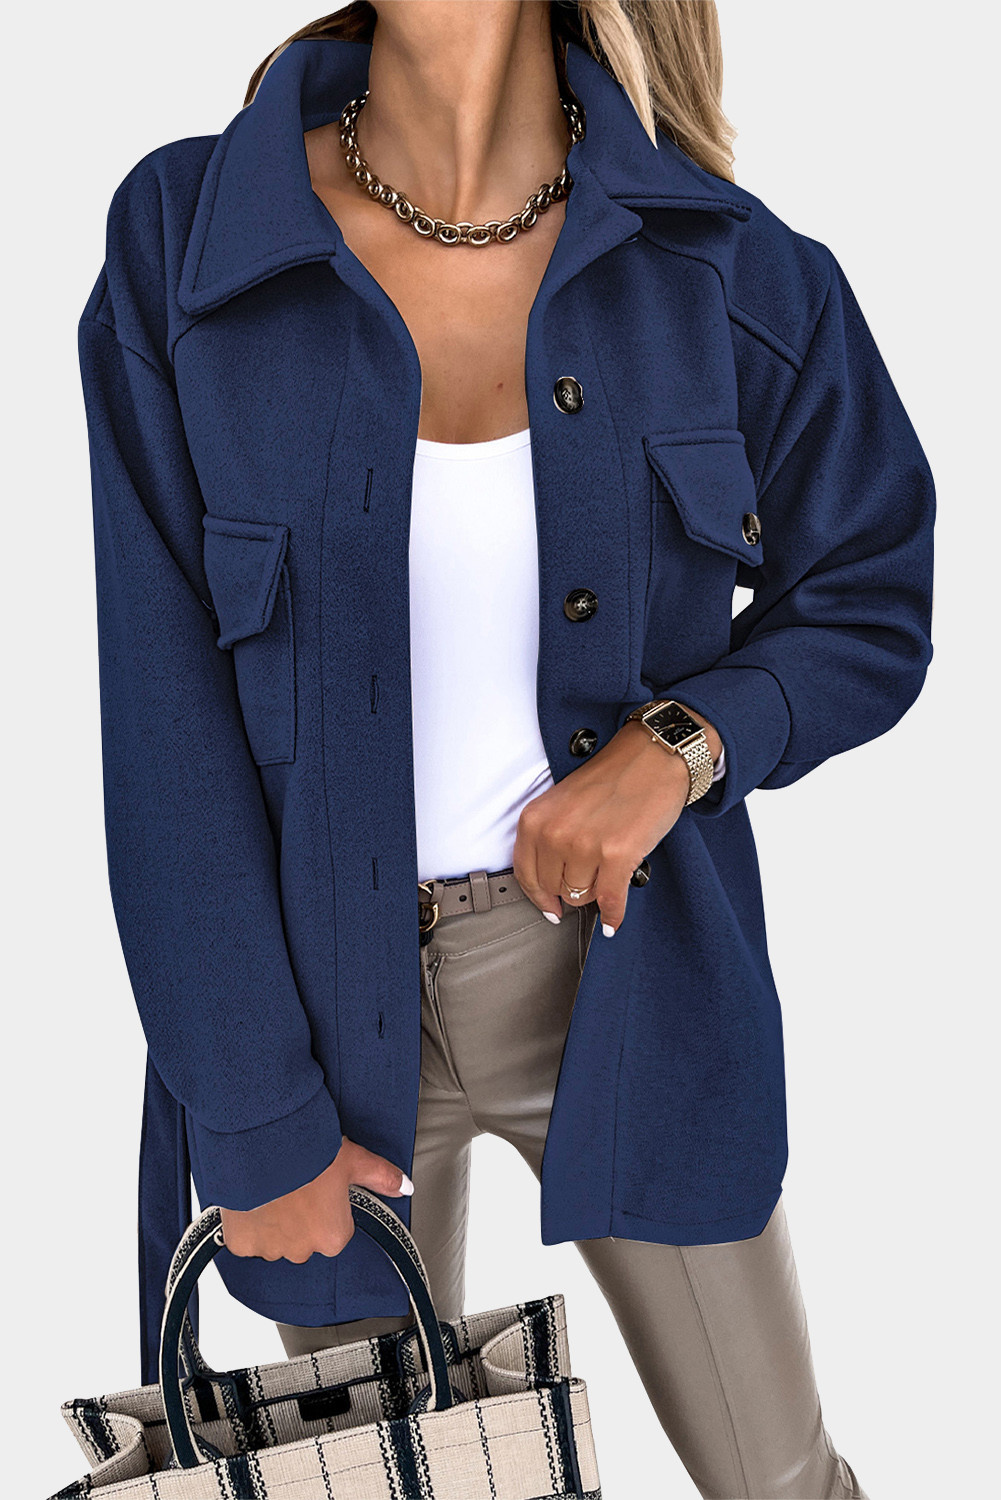 蓝色时尚休闲胸袋翻领系扣女士大衣外套 LC8511359